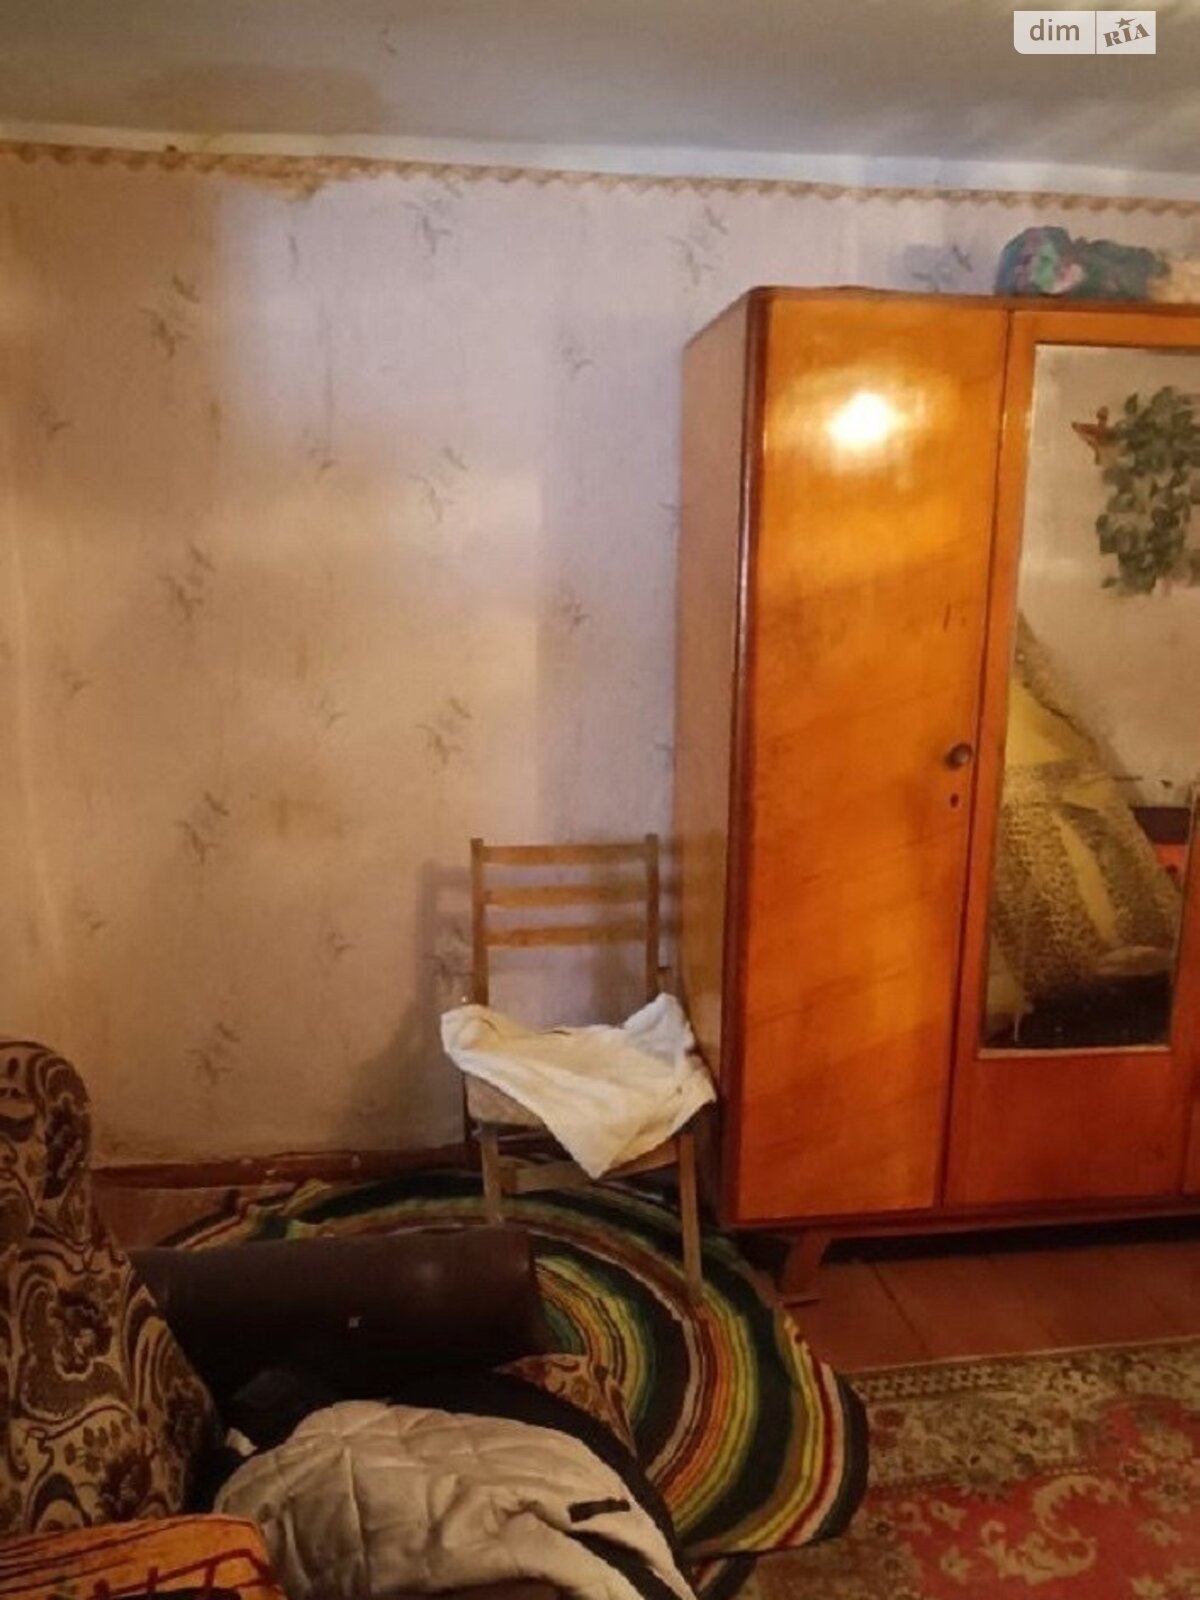 Продажа части дома в Николаеве, район Заводской, 2 комнаты фото 1